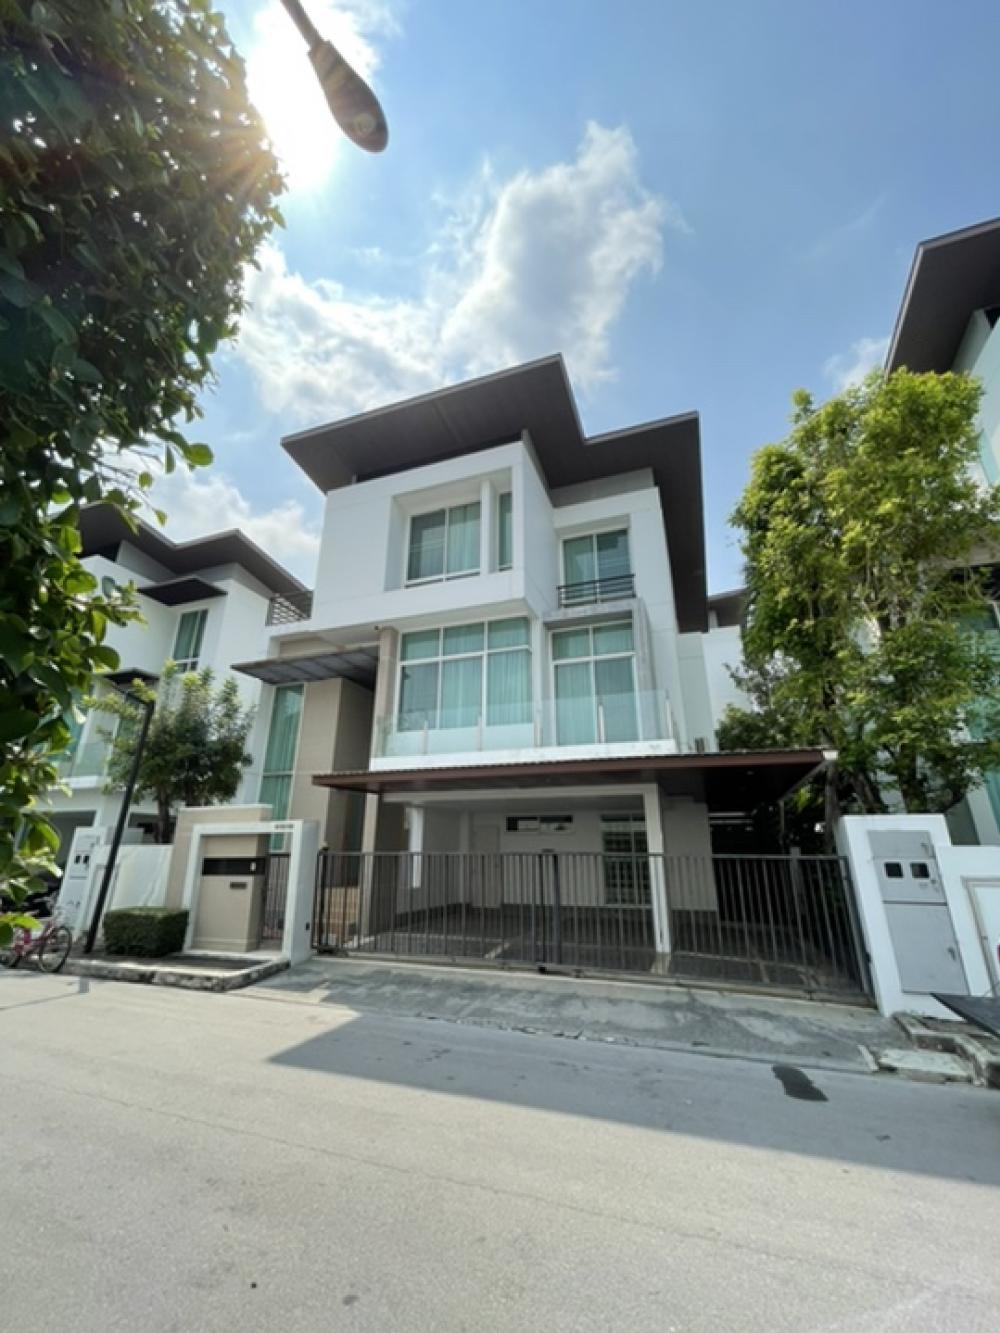 ขายบ้านพระราม 9 เพชรบุรีตัดใหม่ RCA : บ้านเดียว 3 ชั้น โมเดิร์น Nirvana Beyond Rama 9 รามคำแหง หัวหมาก บางกะปิ ถนนพระราม9